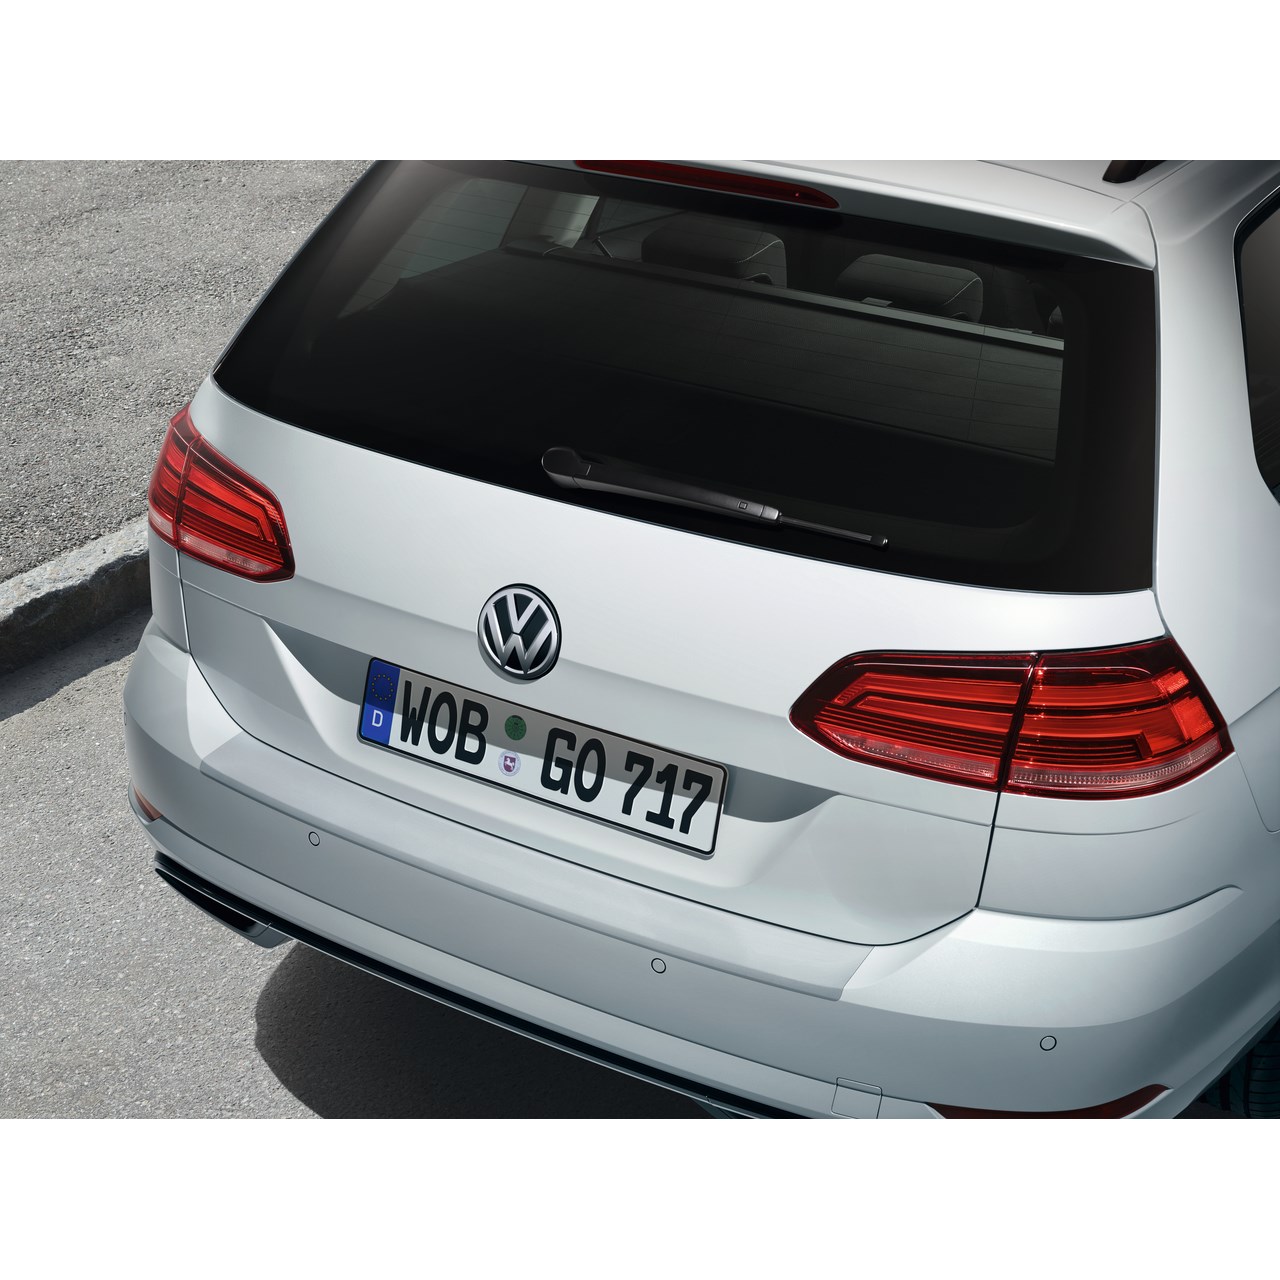 Schutzfolien für Volkswagen Golf 7 Discover Media versandkostenfrei  bestellen